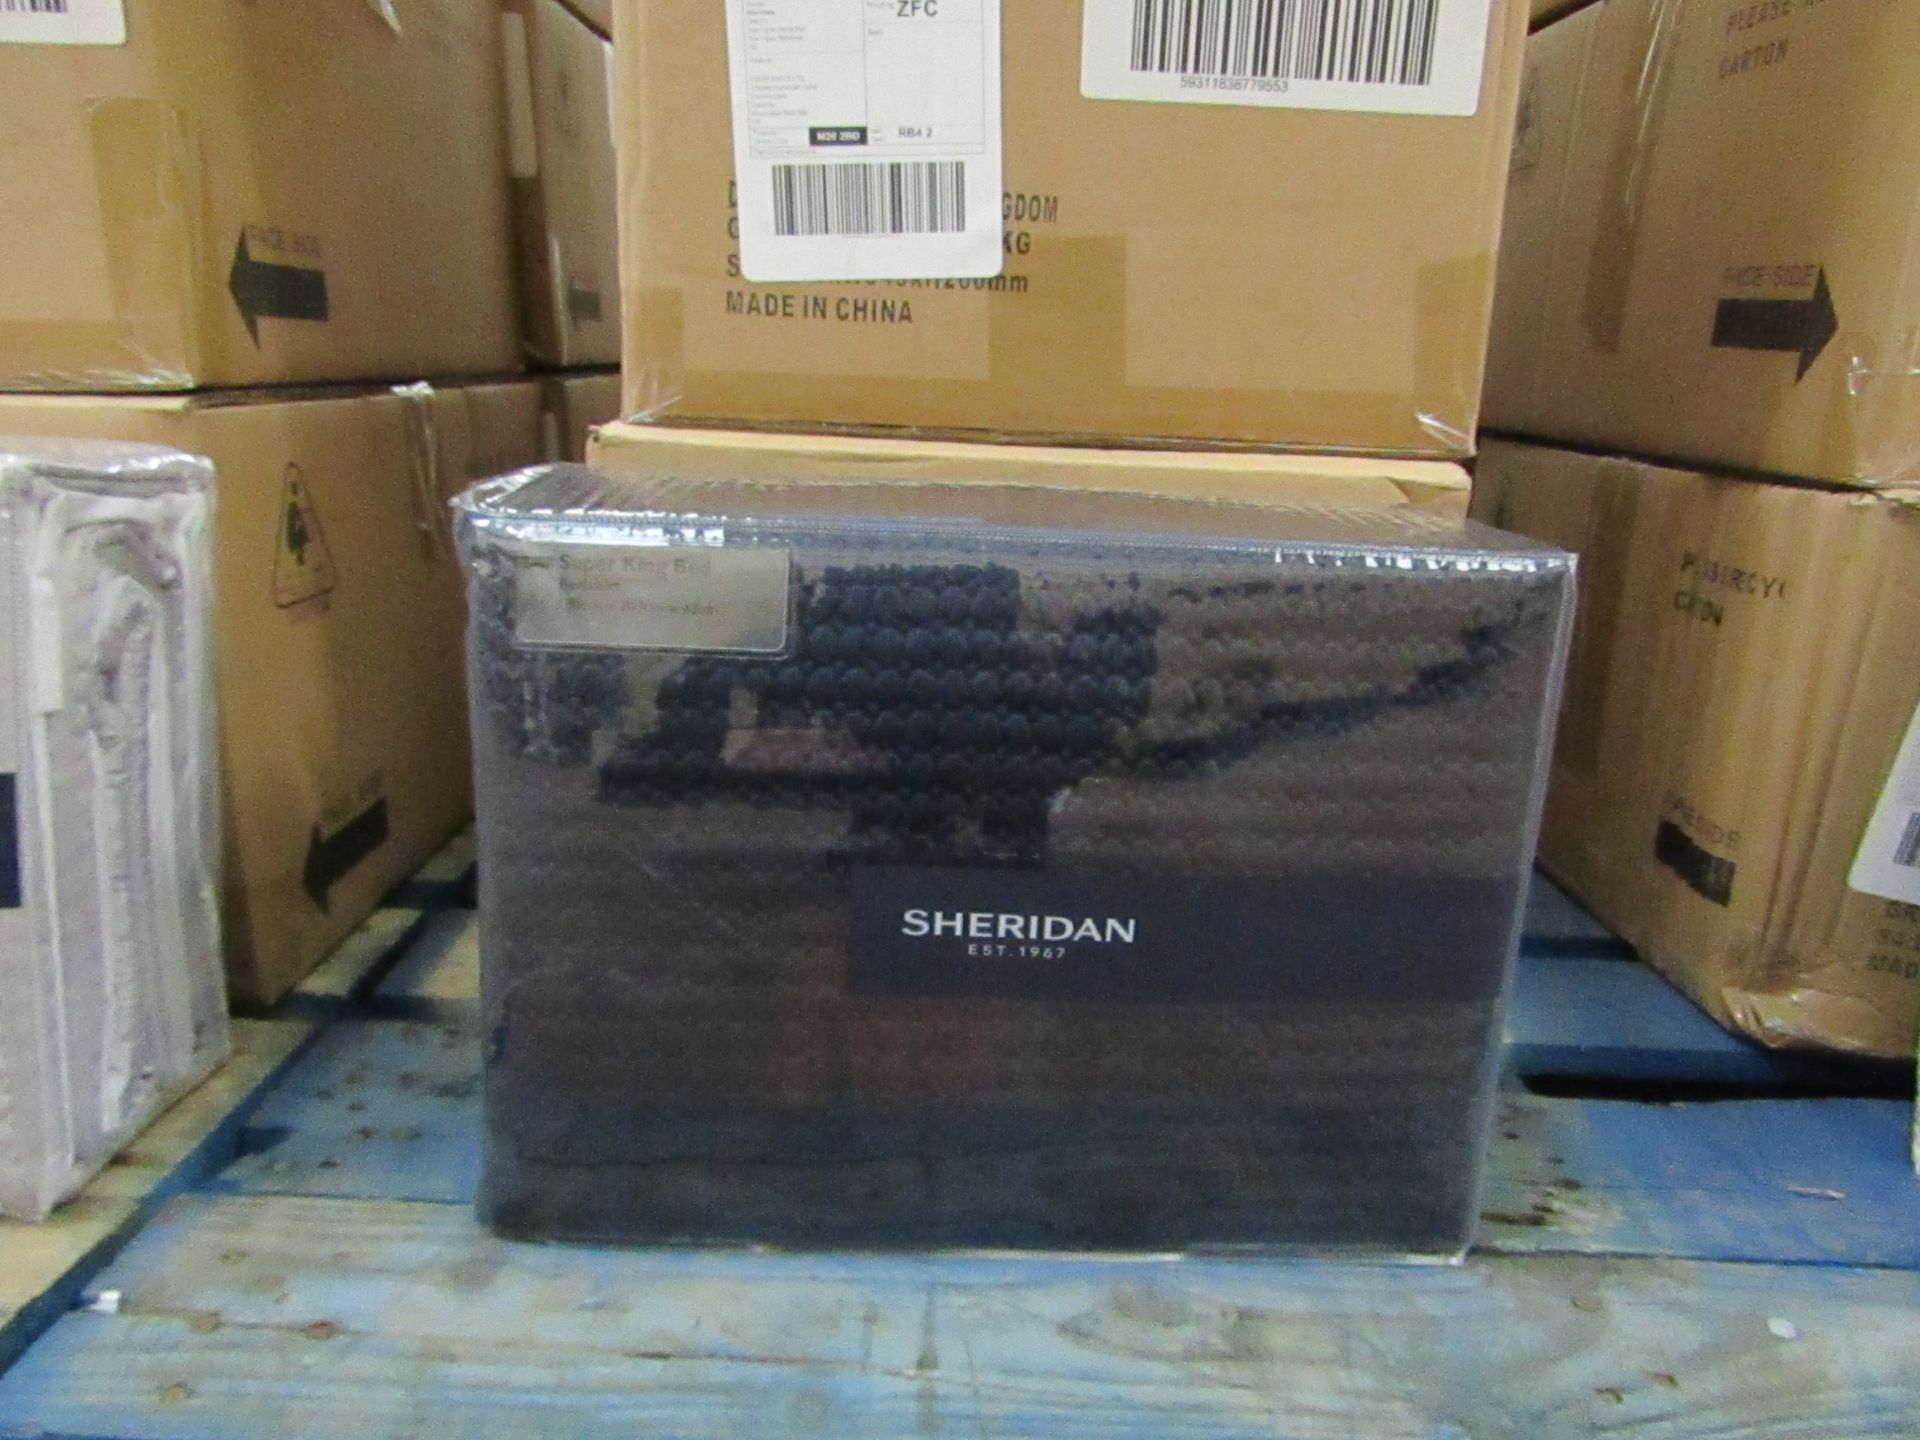 Sheridan - Christobel Bedskirt - Colour Midnight - Size Super-King - New & Packaged. RRP £75.